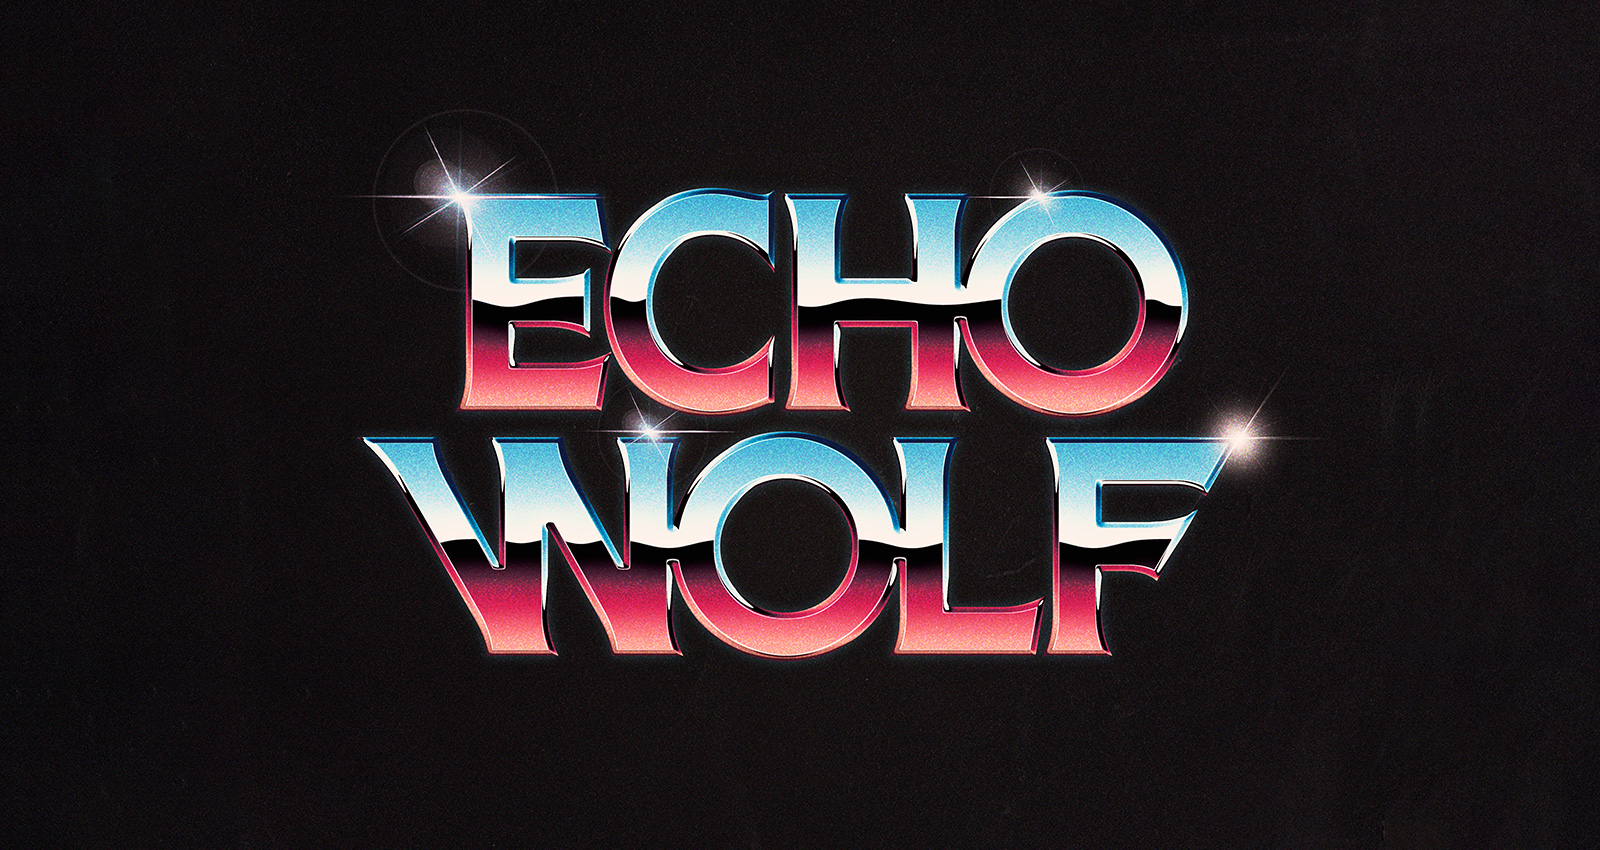 Echowolf Artist logo